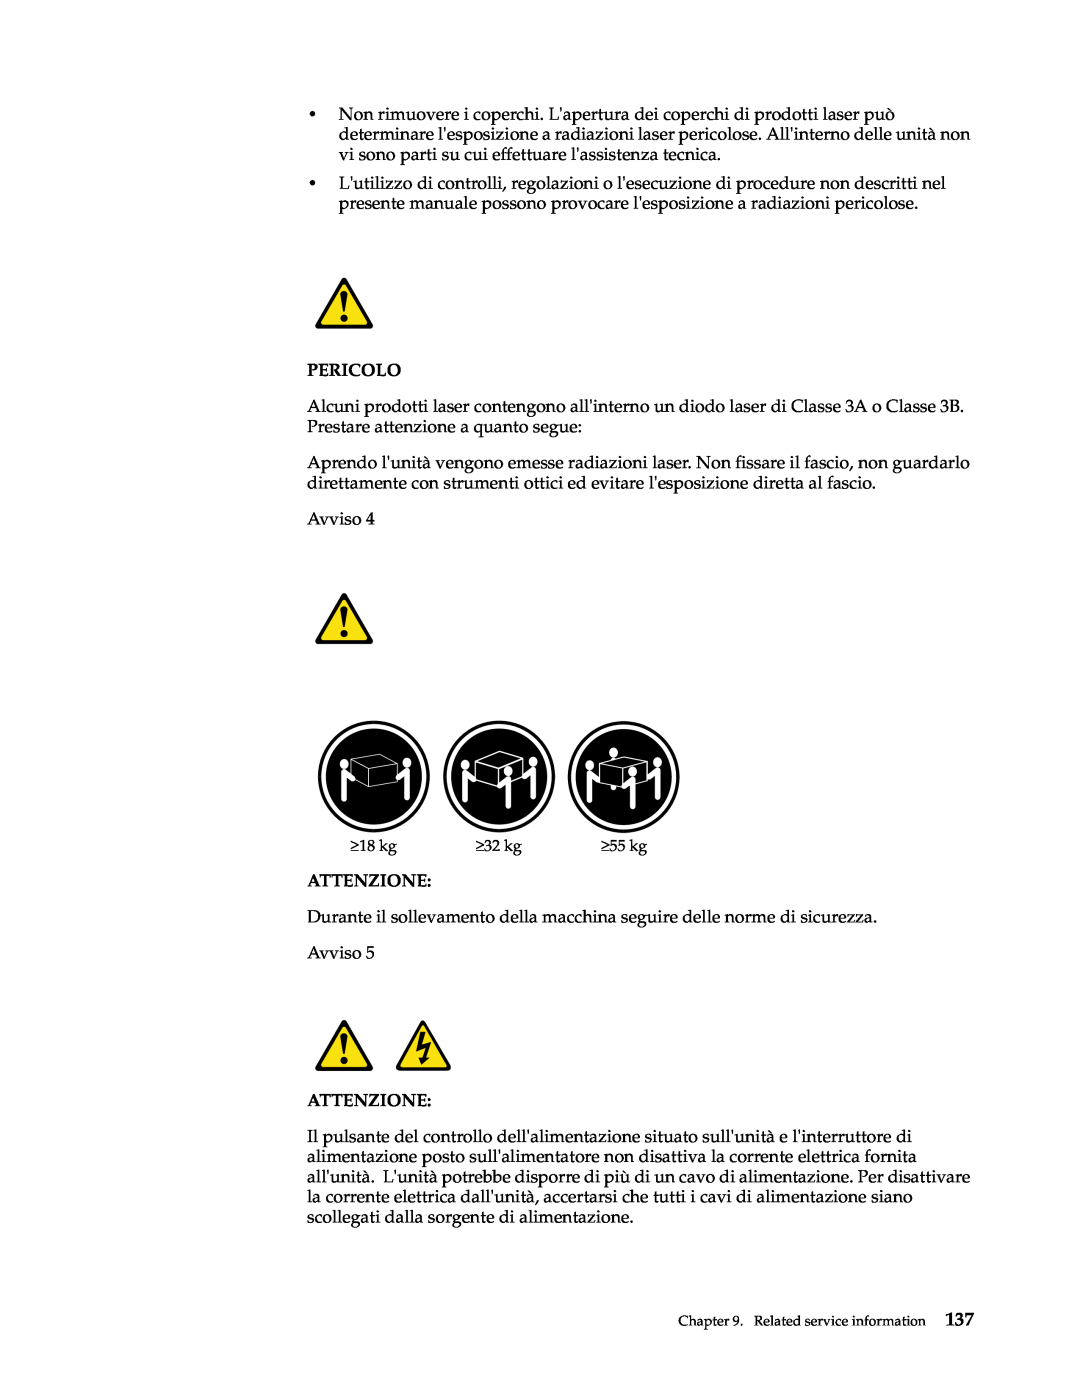 IBM xSeries 330 manual Pericolo, Avviso, Attenzione 